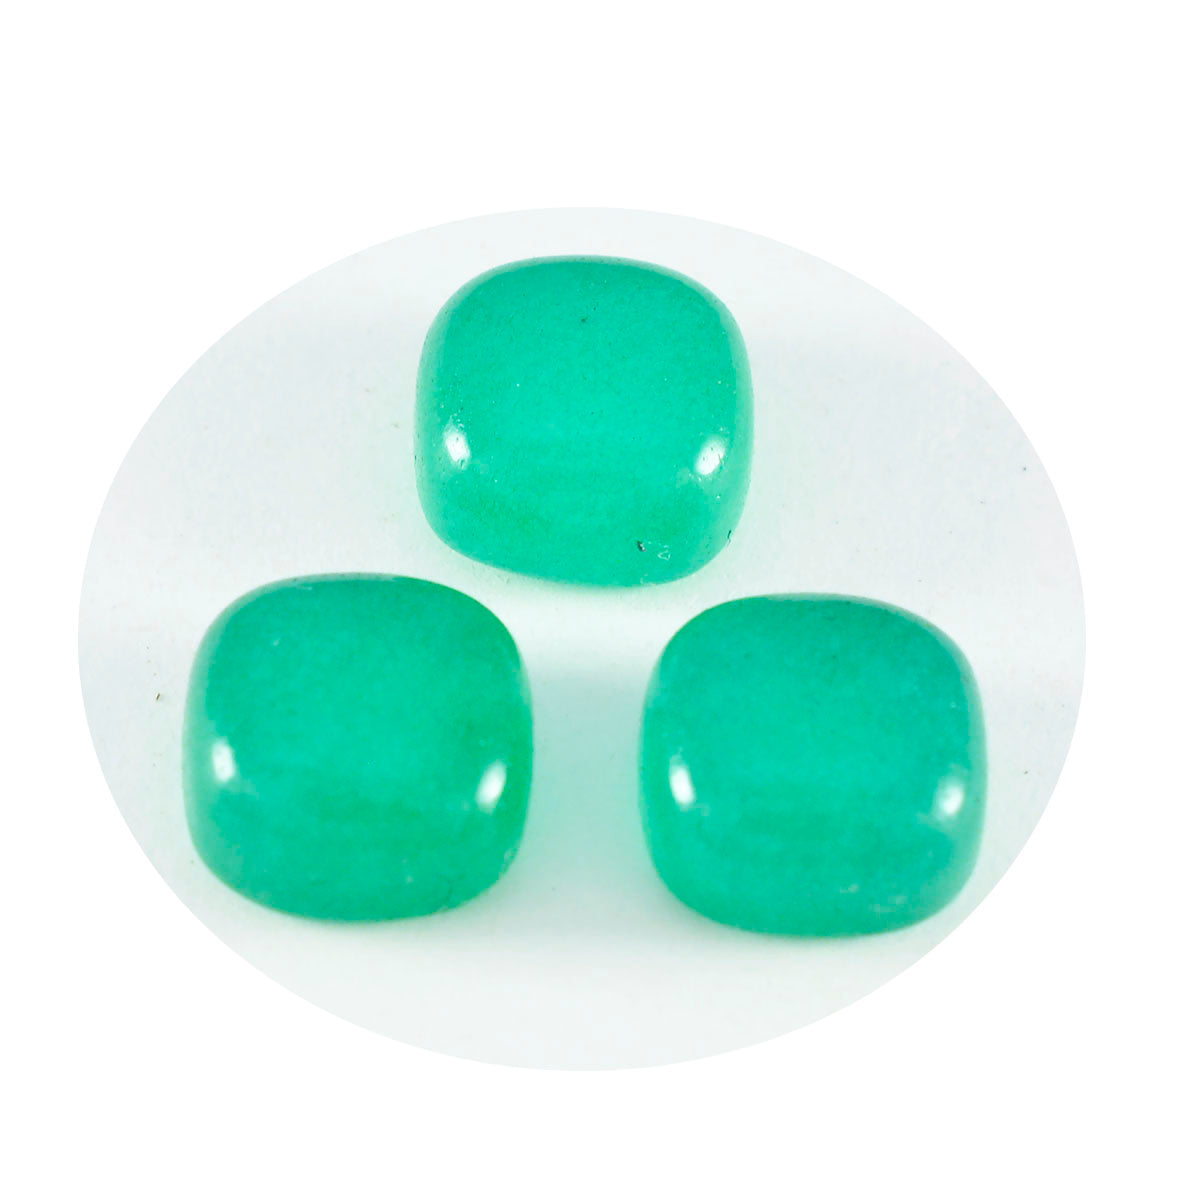 Riyogems 1PC Green Onyx Cabochon 7x7 mm Cushion Shape AAA Quality Loose Gemstone